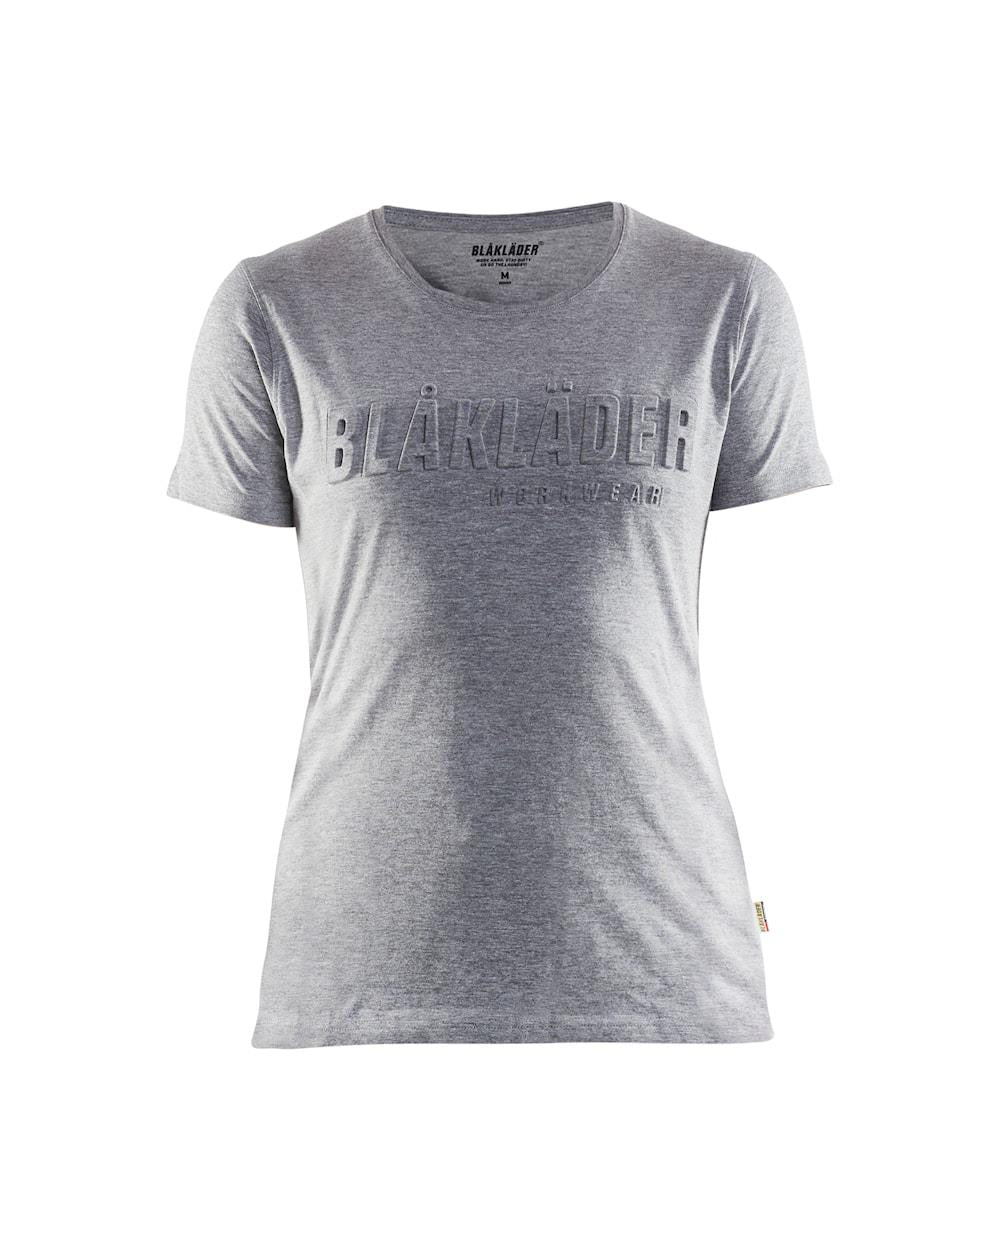 Blaklader 3D-logo grey marl women's cotton-mix short-sleeve T-shirt #3431